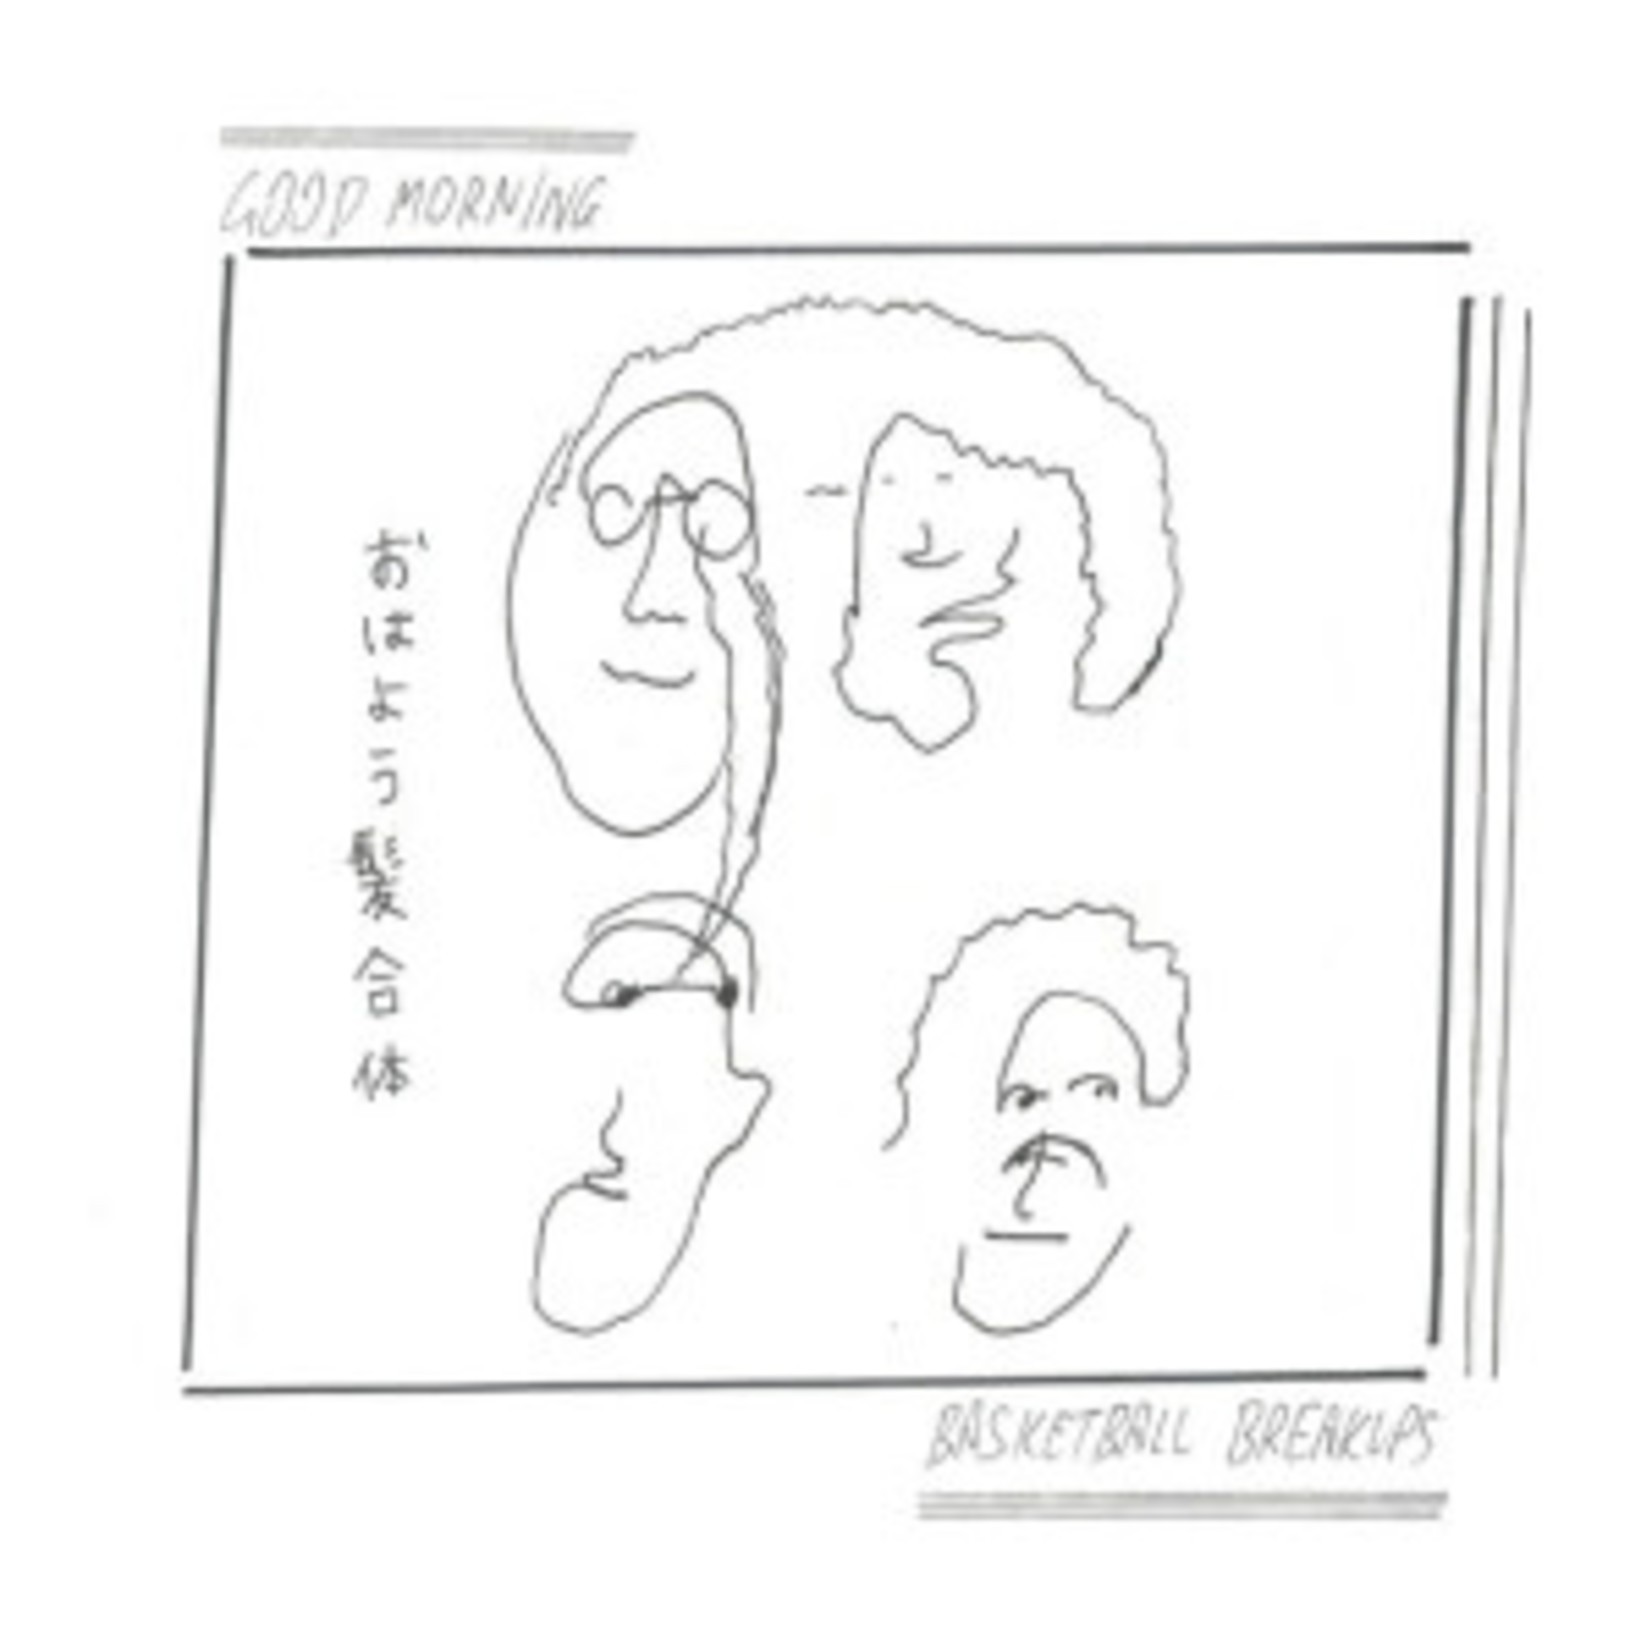 Polyvinyl Good Morning - Basketball Breakups (LP) [White]